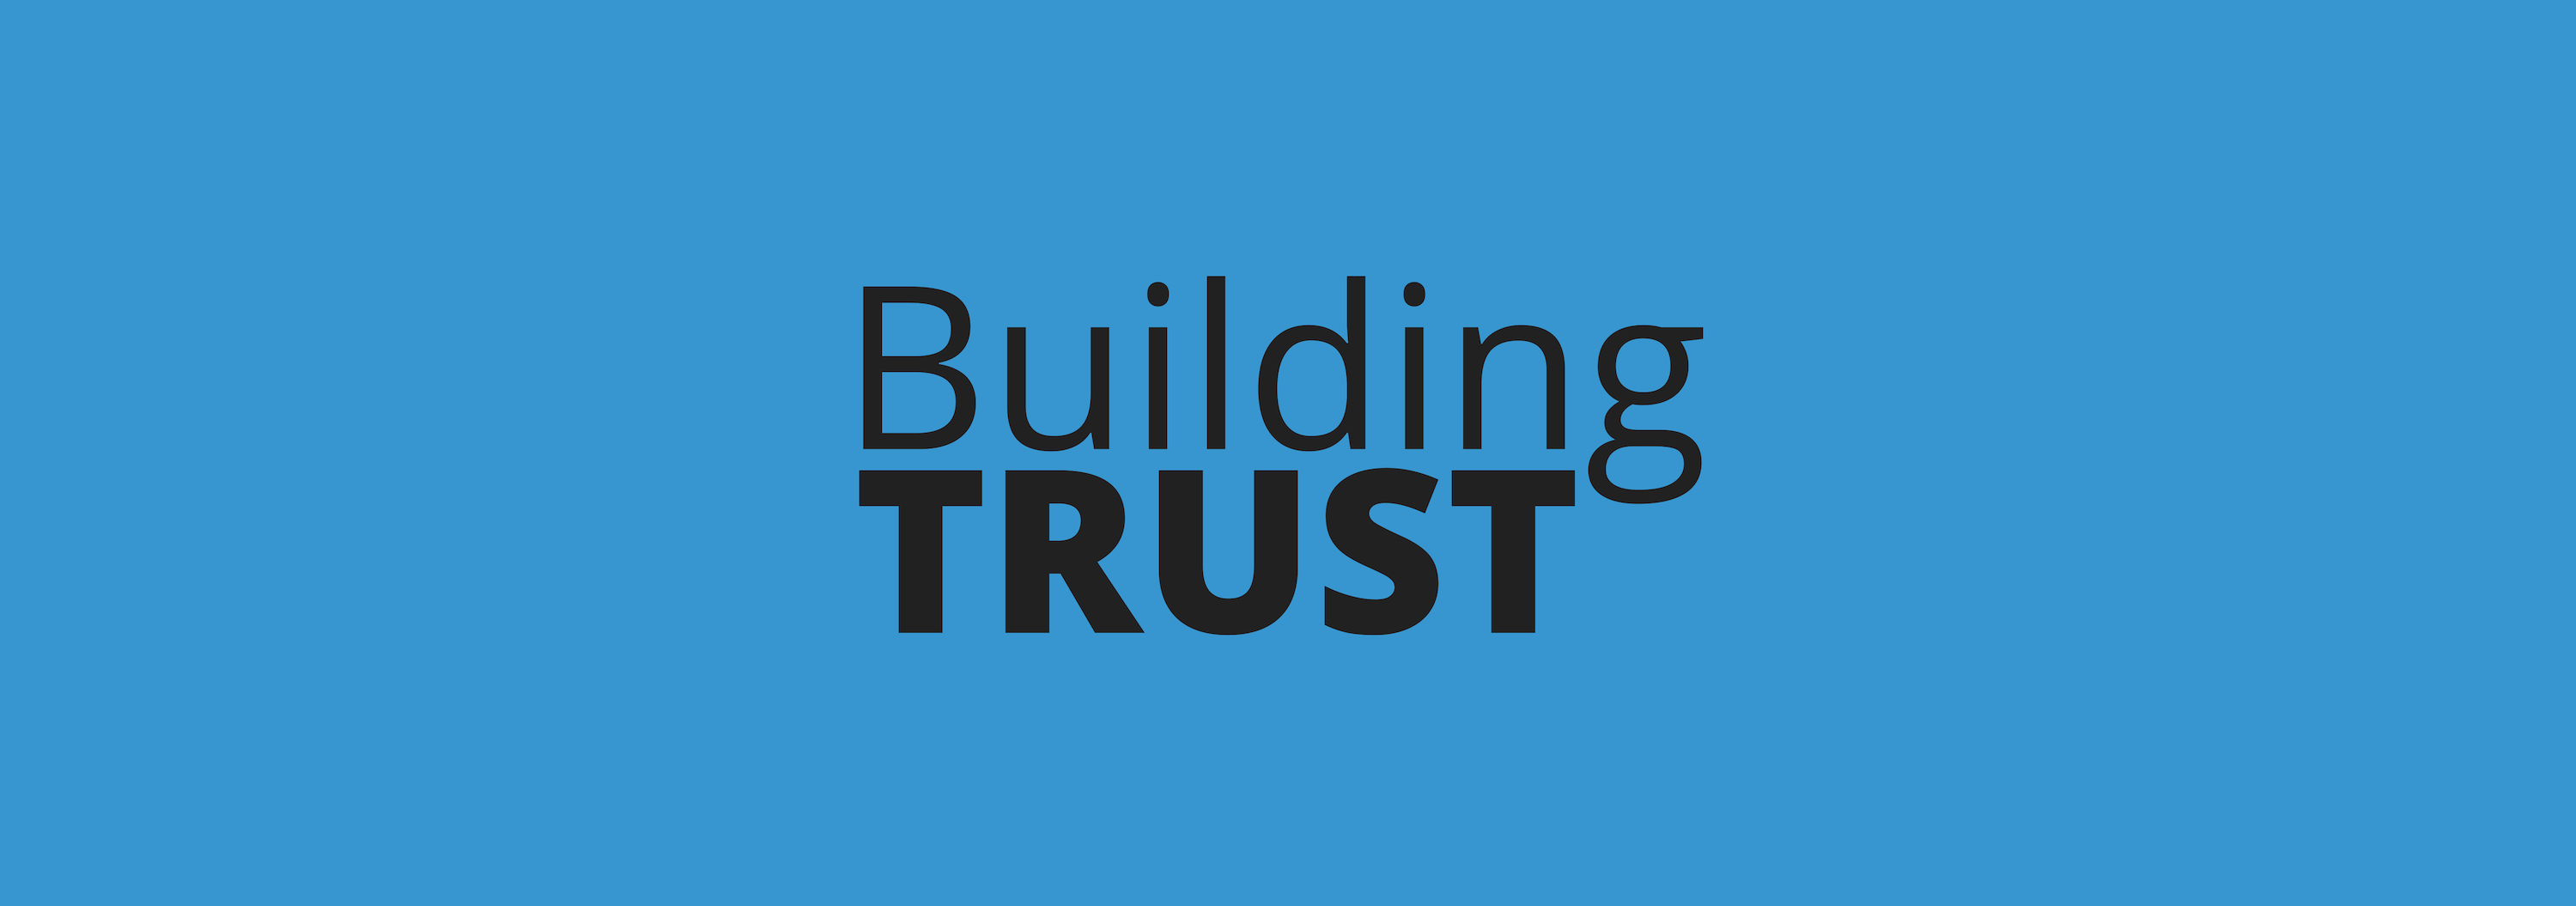 Top 5 HR Trends _Trust